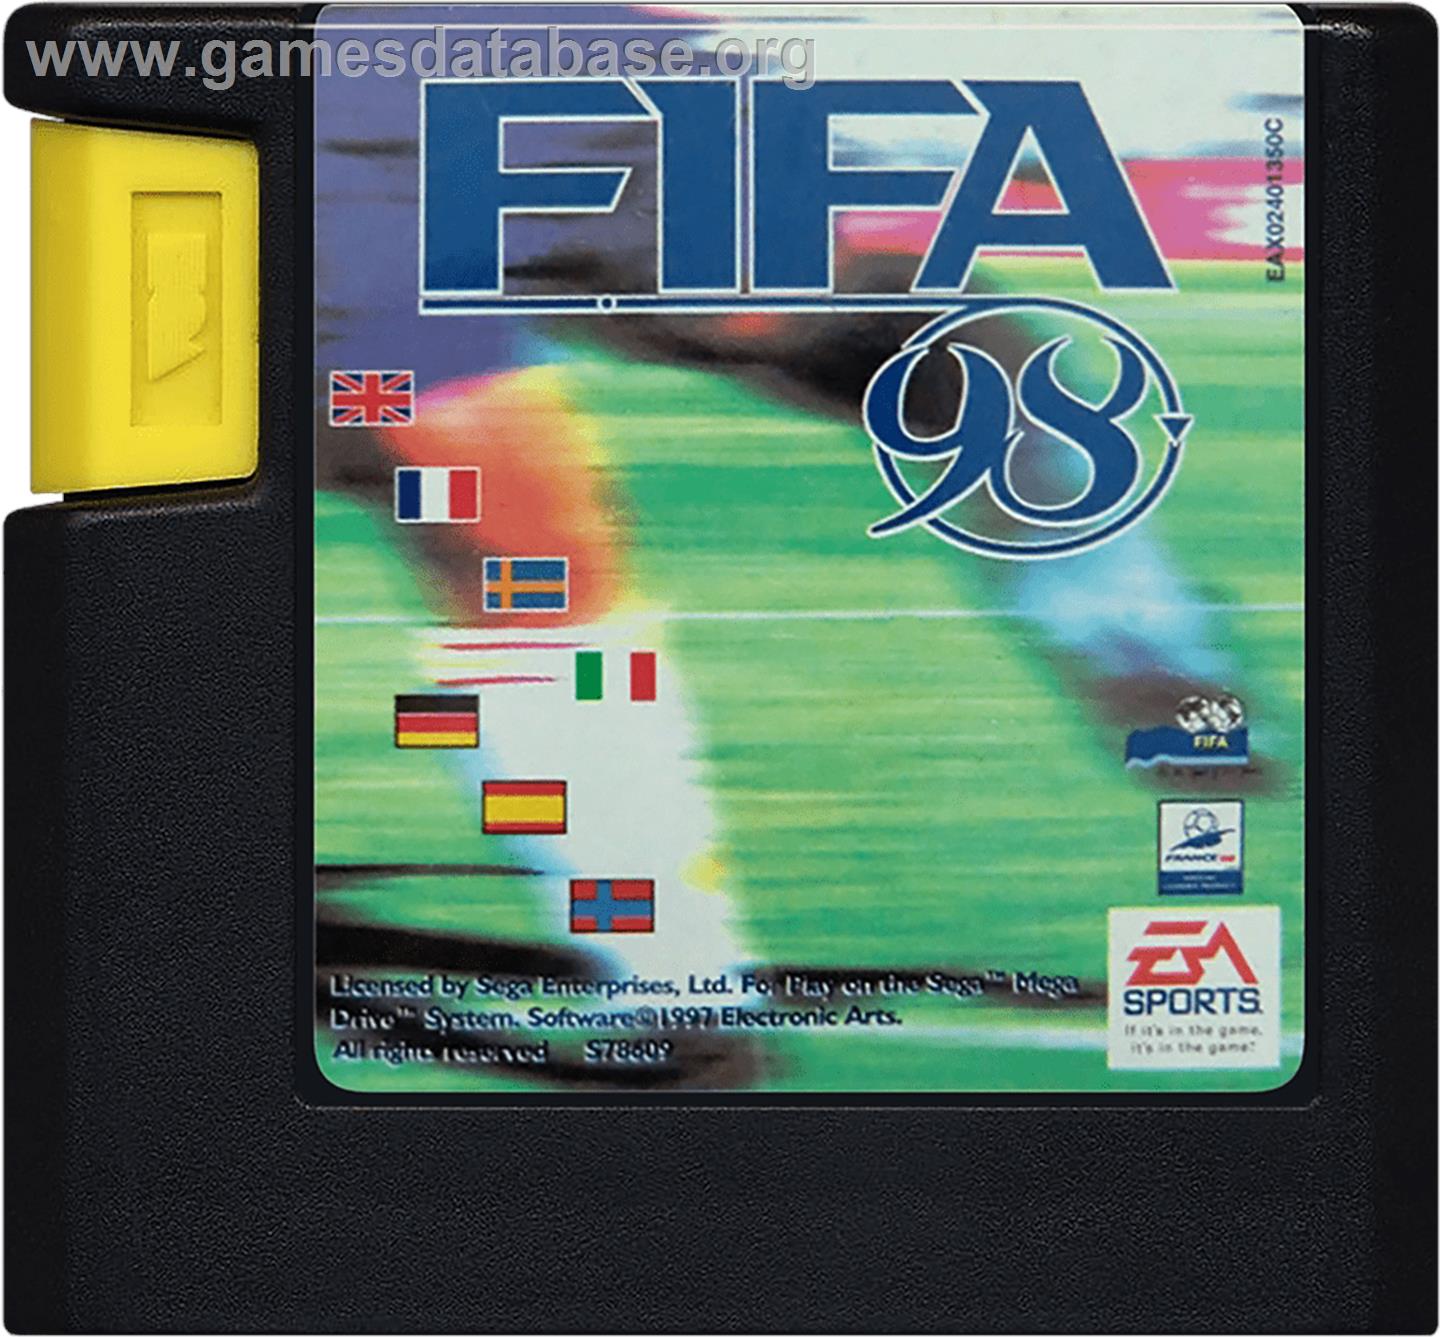 FIFA 98: Road to World Cup - Sega Genesis - Artwork - Cartridge